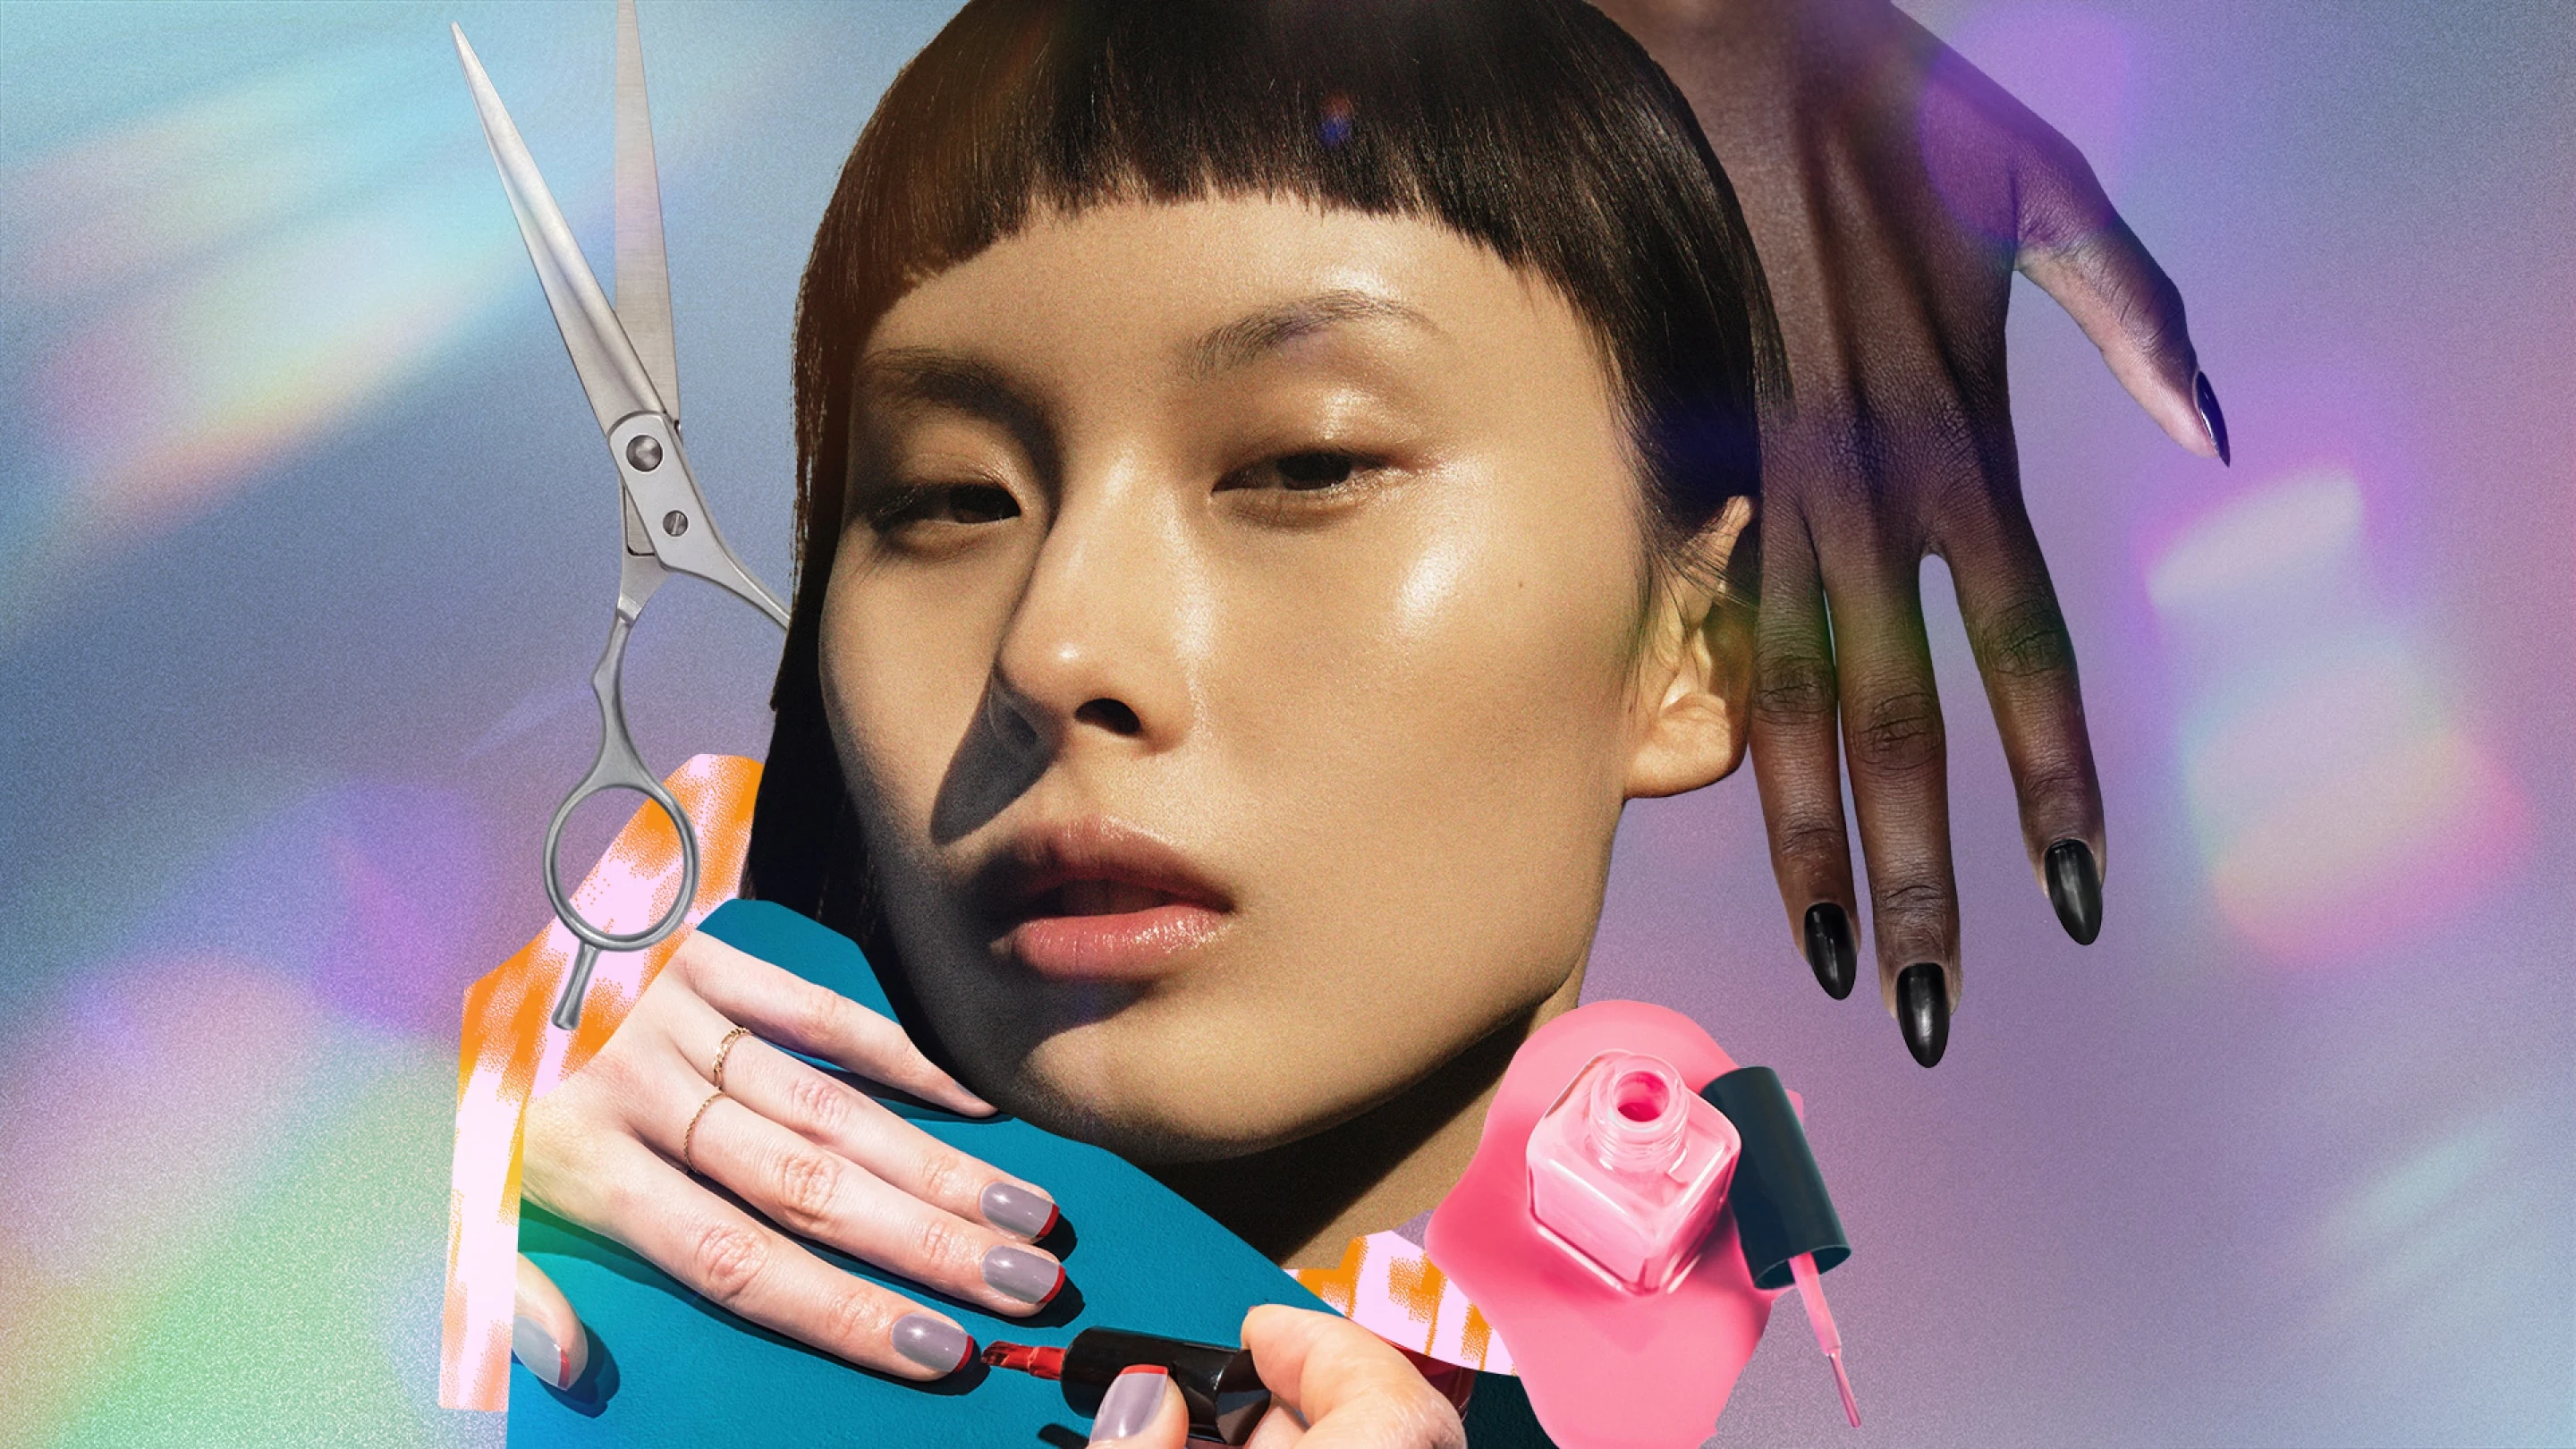 Collage de varios ejemplos de estilos de belleza micro como un flequillo corto en una mujer asiática, manicuras cortas en dos juegos de manos diferentes y tijeras para el cabello colocadas artísticamente. 